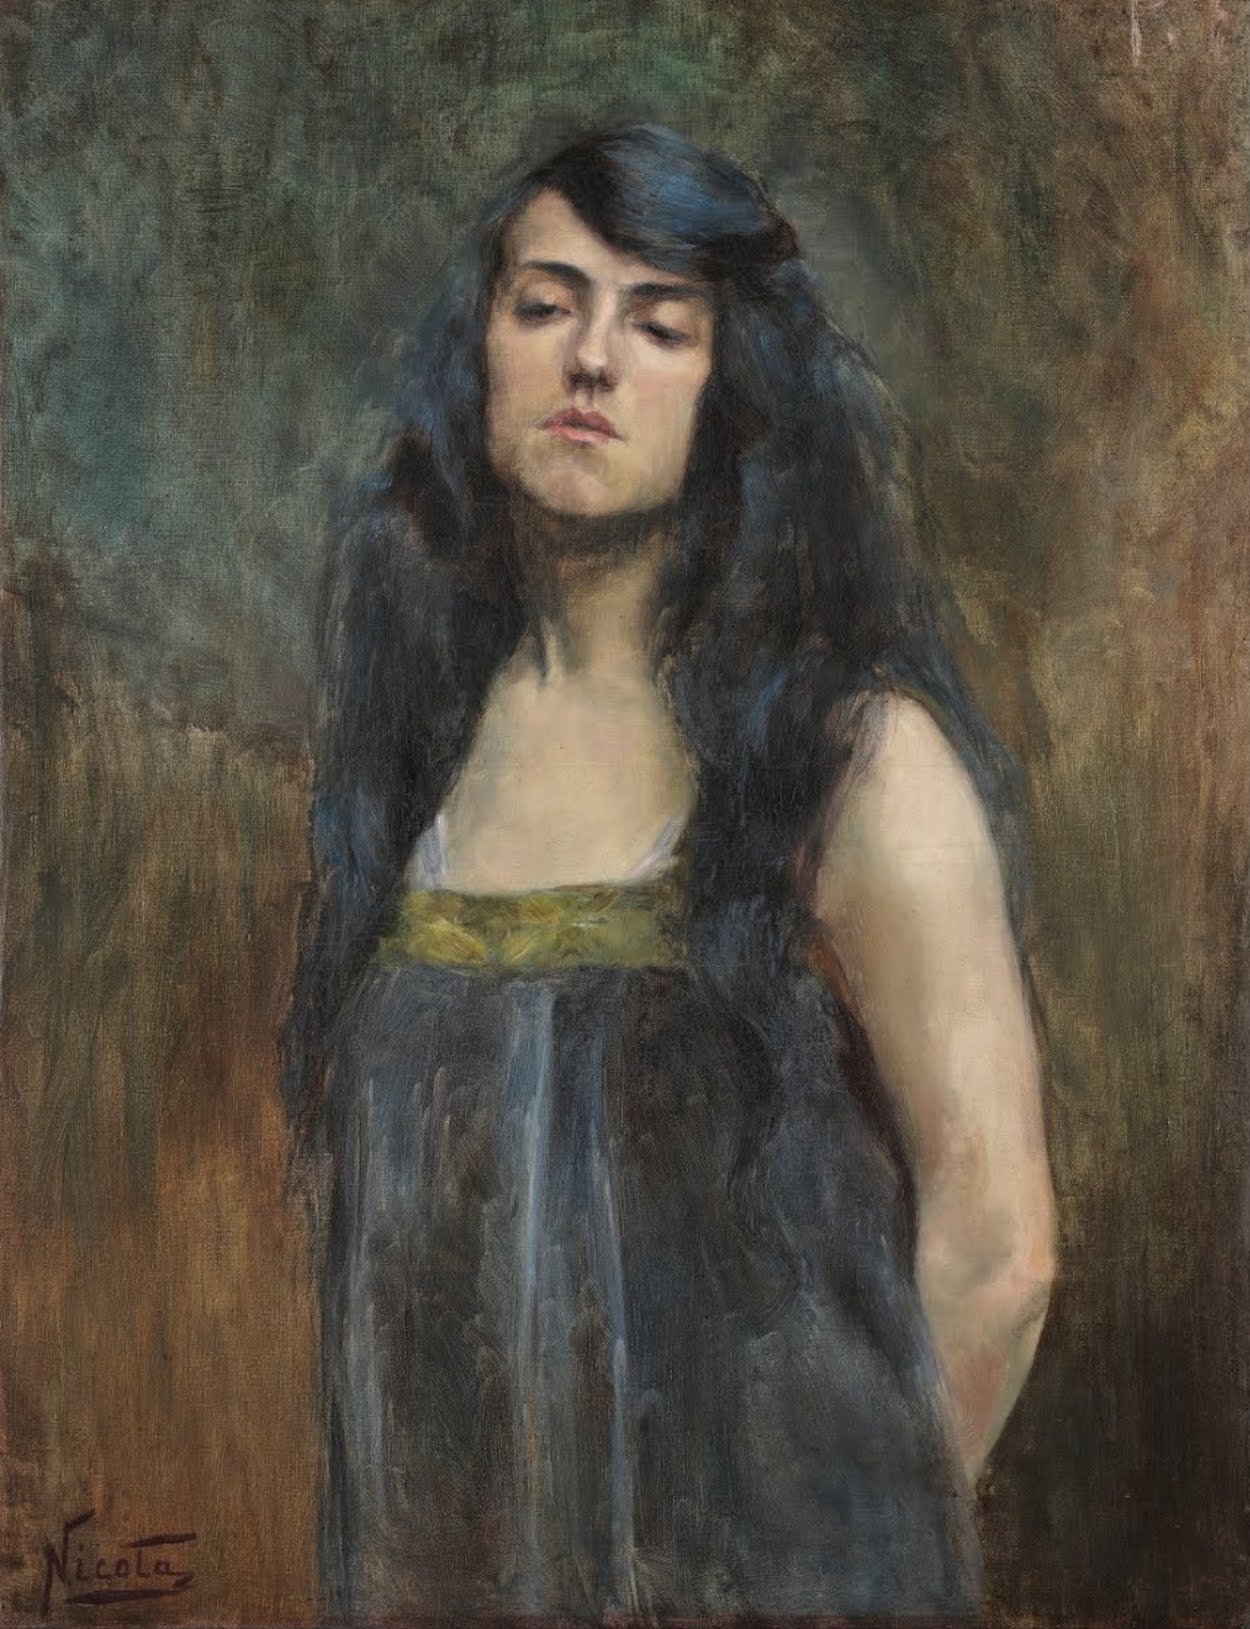 Coração ferido by Nicota Bayeux - 1913 - 87 x 67 cm 